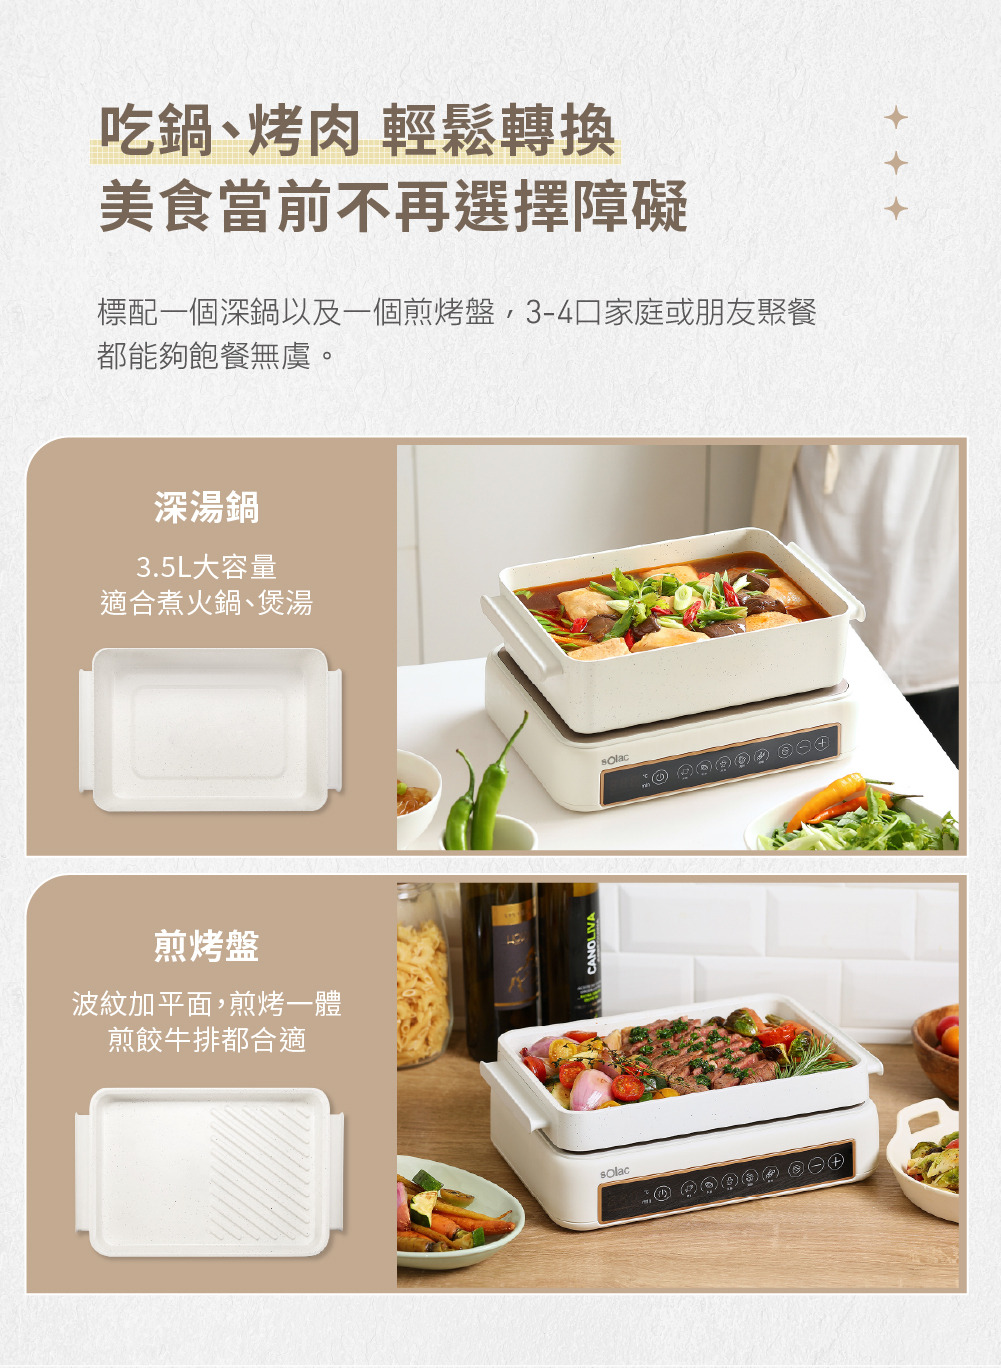 多功能陶瓷電烤盤 SMG-020W標準配備一個深鍋與一個煎烤盤，適合3-4人使用